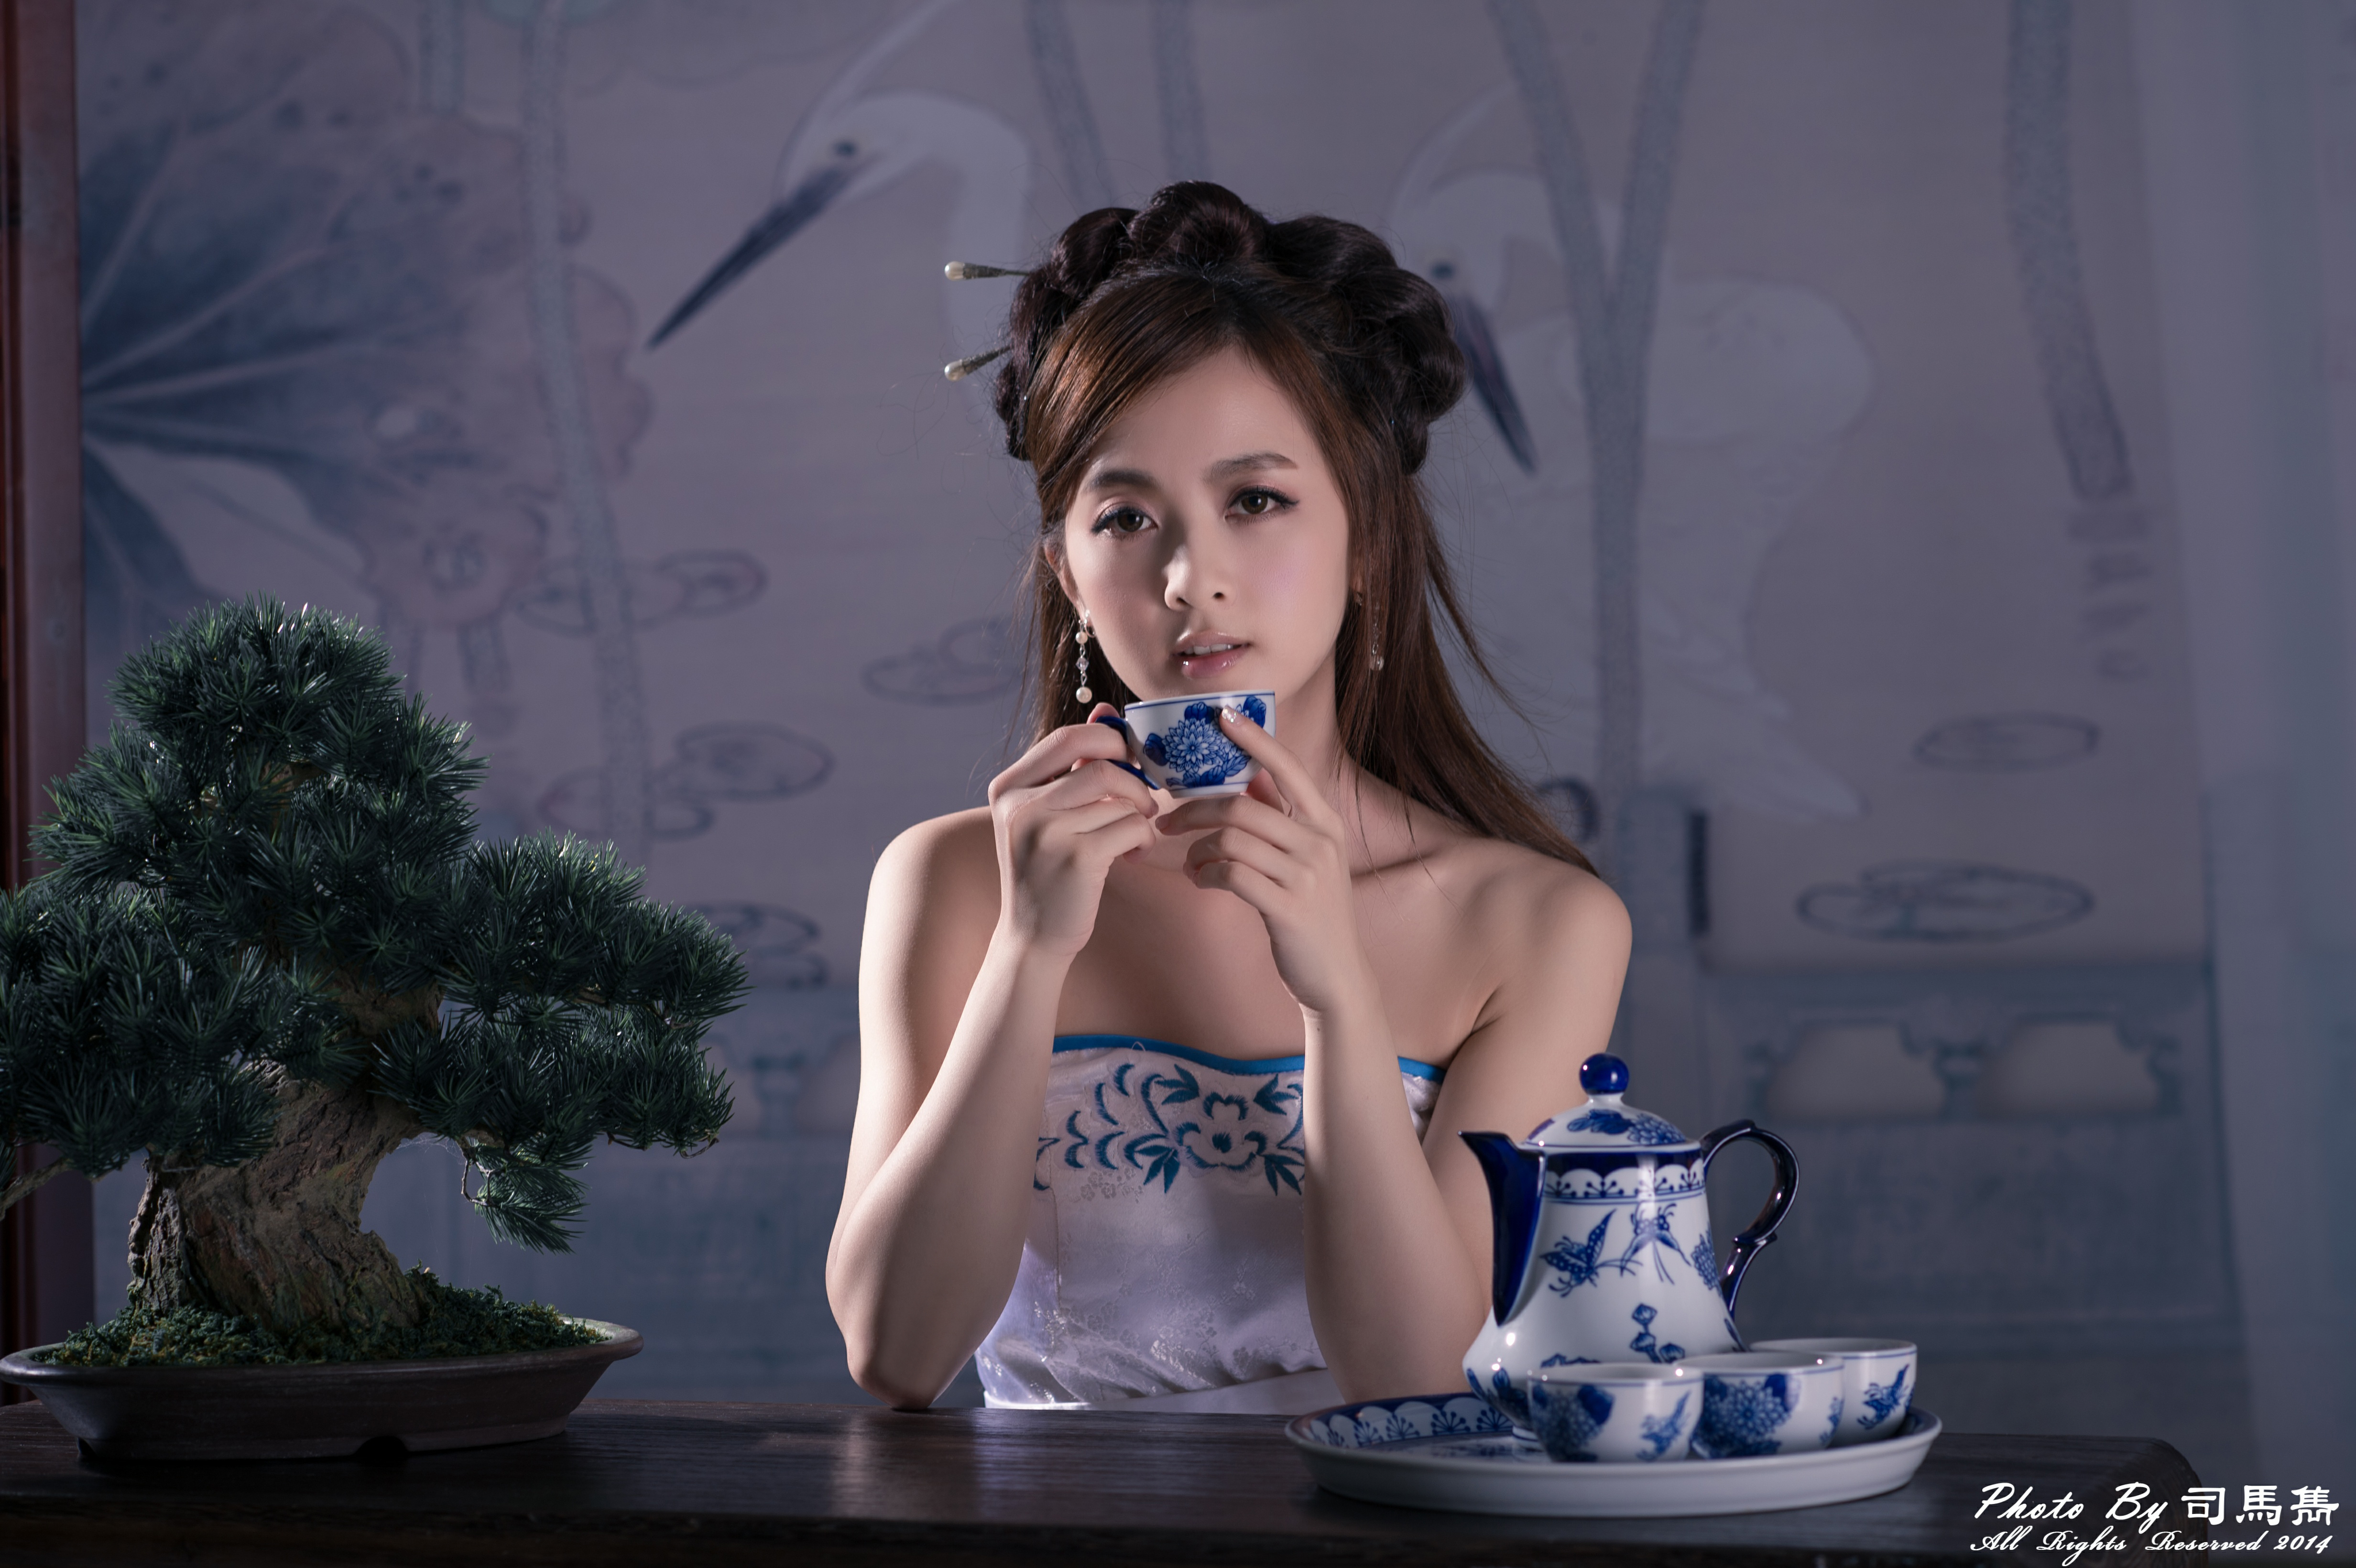 women, mikako zhang kaijie, asian, bonsai, cup, hairpin, hair dress, taiwanese, tea set Full HD